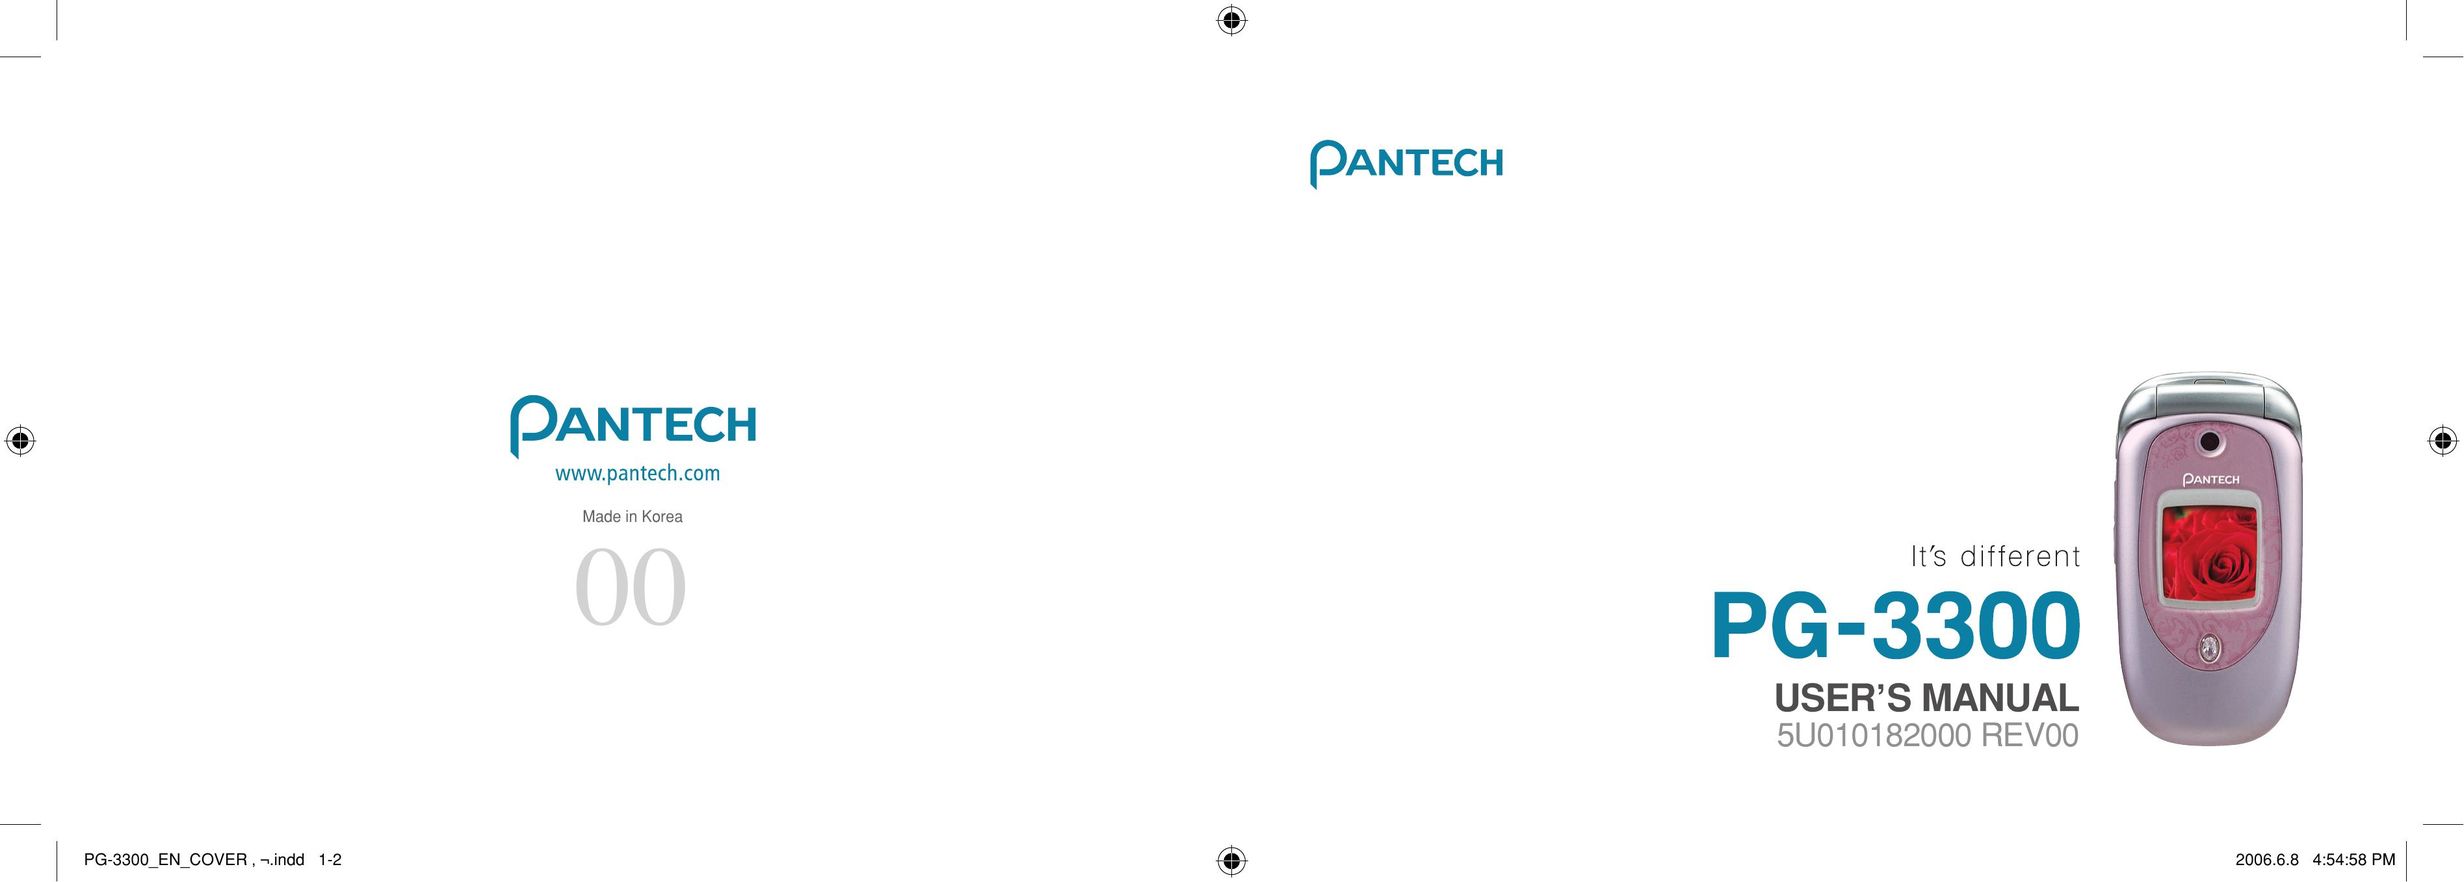 Pantech PG-3300 Cell Phone User Manual